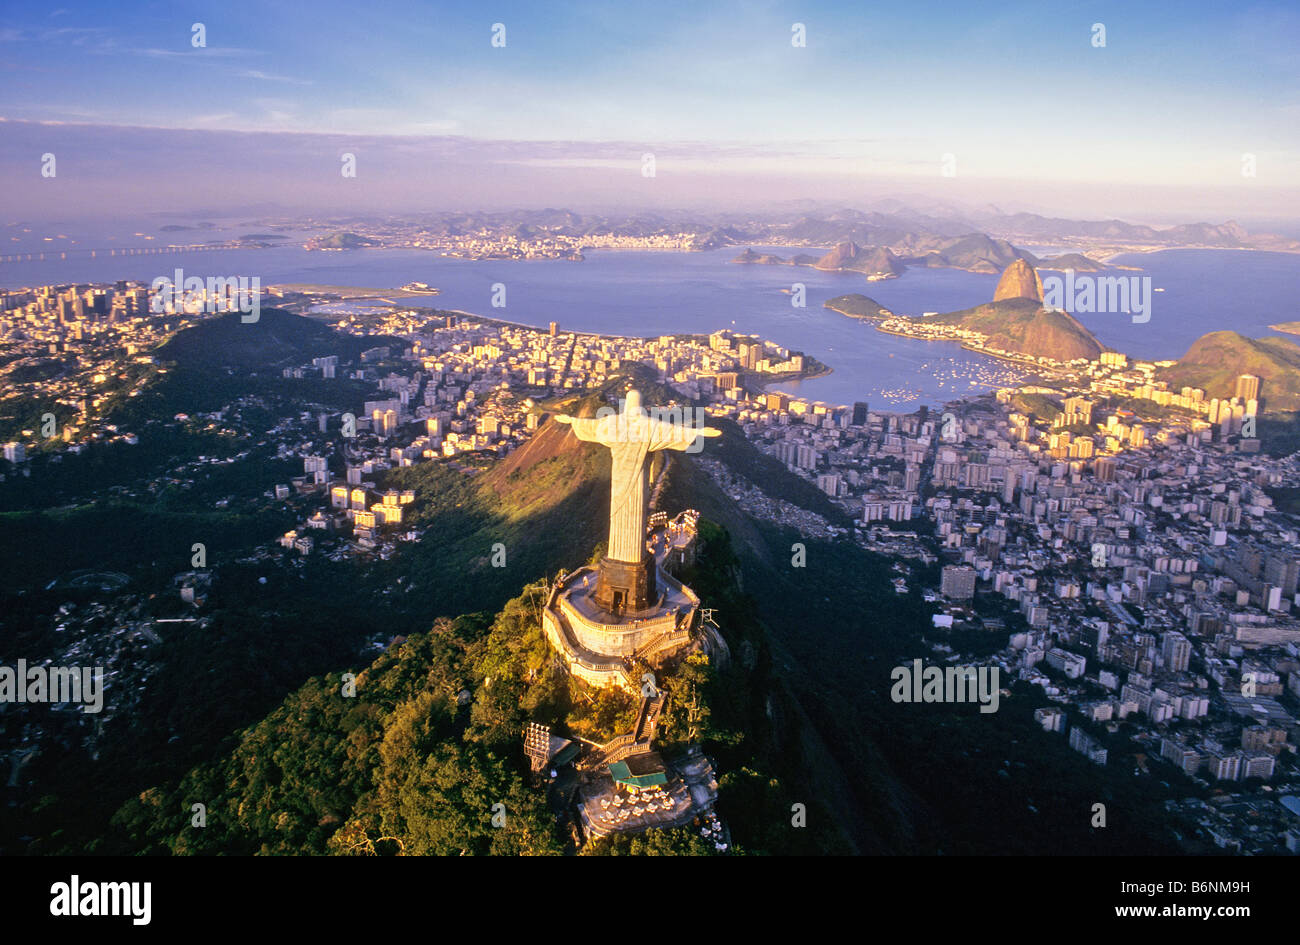 BRAZIL RIO DE JANEIRO STATUE OF CHRIST AT CORCOVADO MOUNTAIN Stock Photo